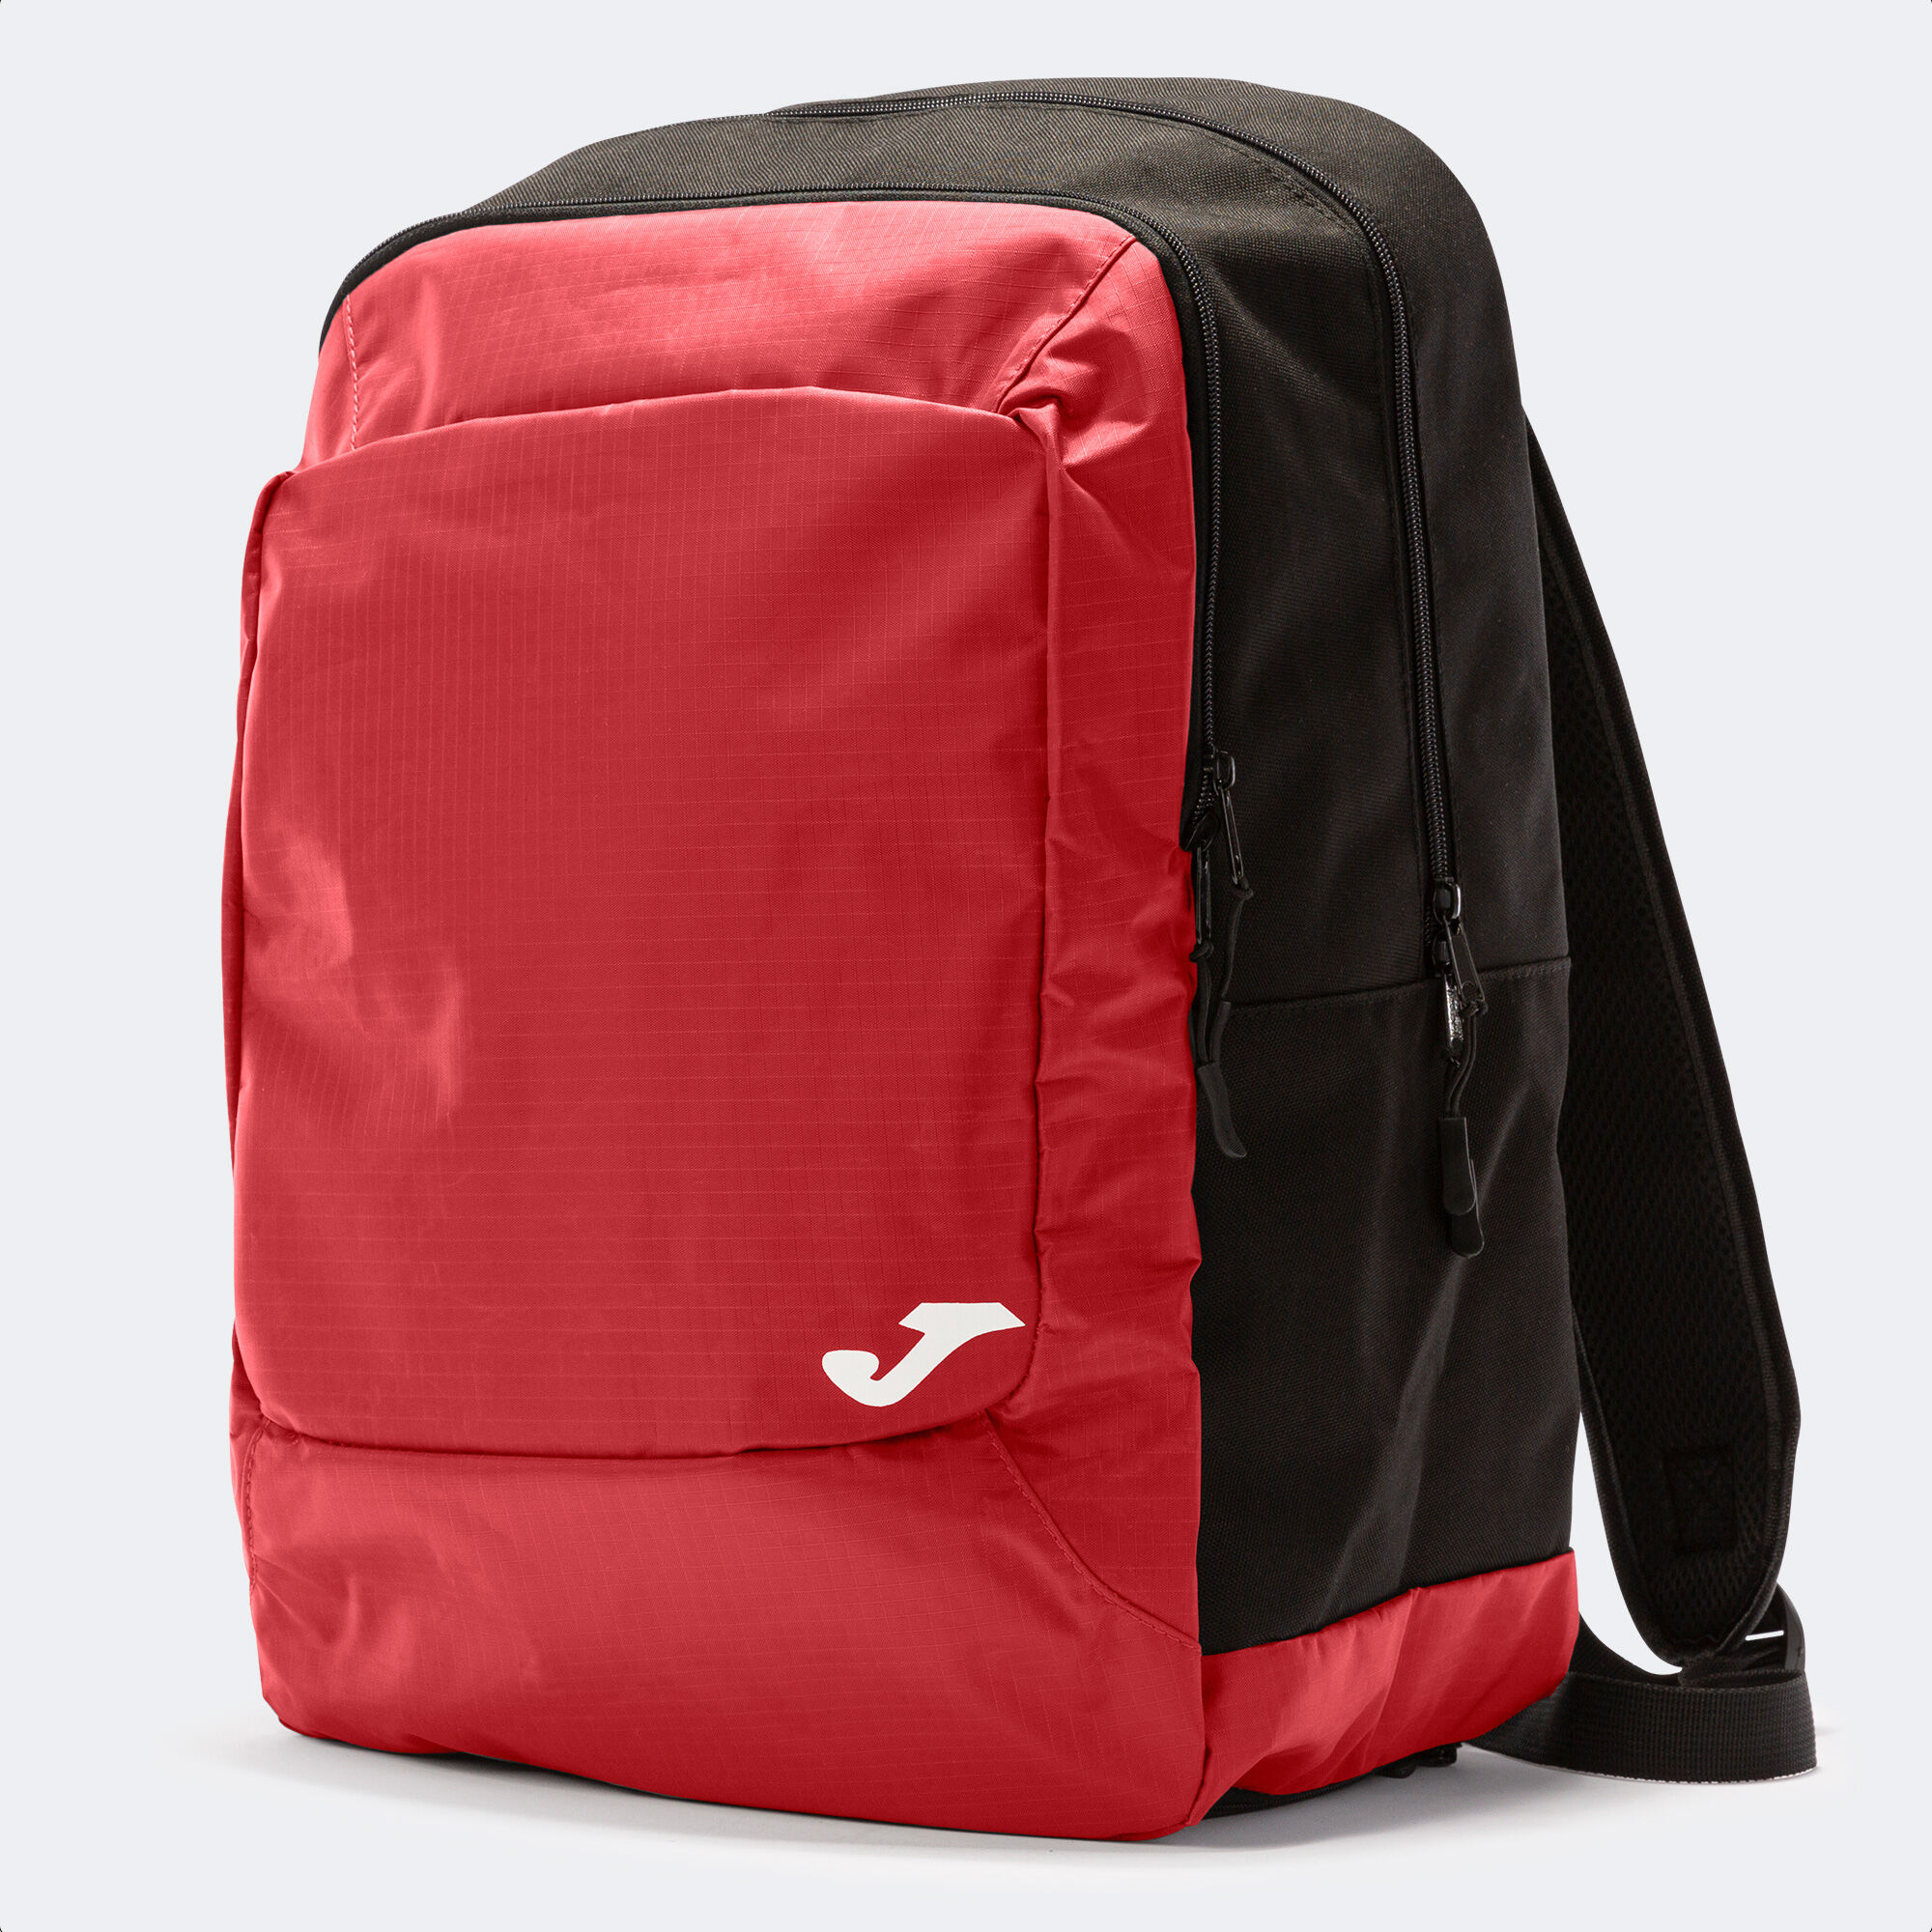 Backpack - shoe bag Team black red